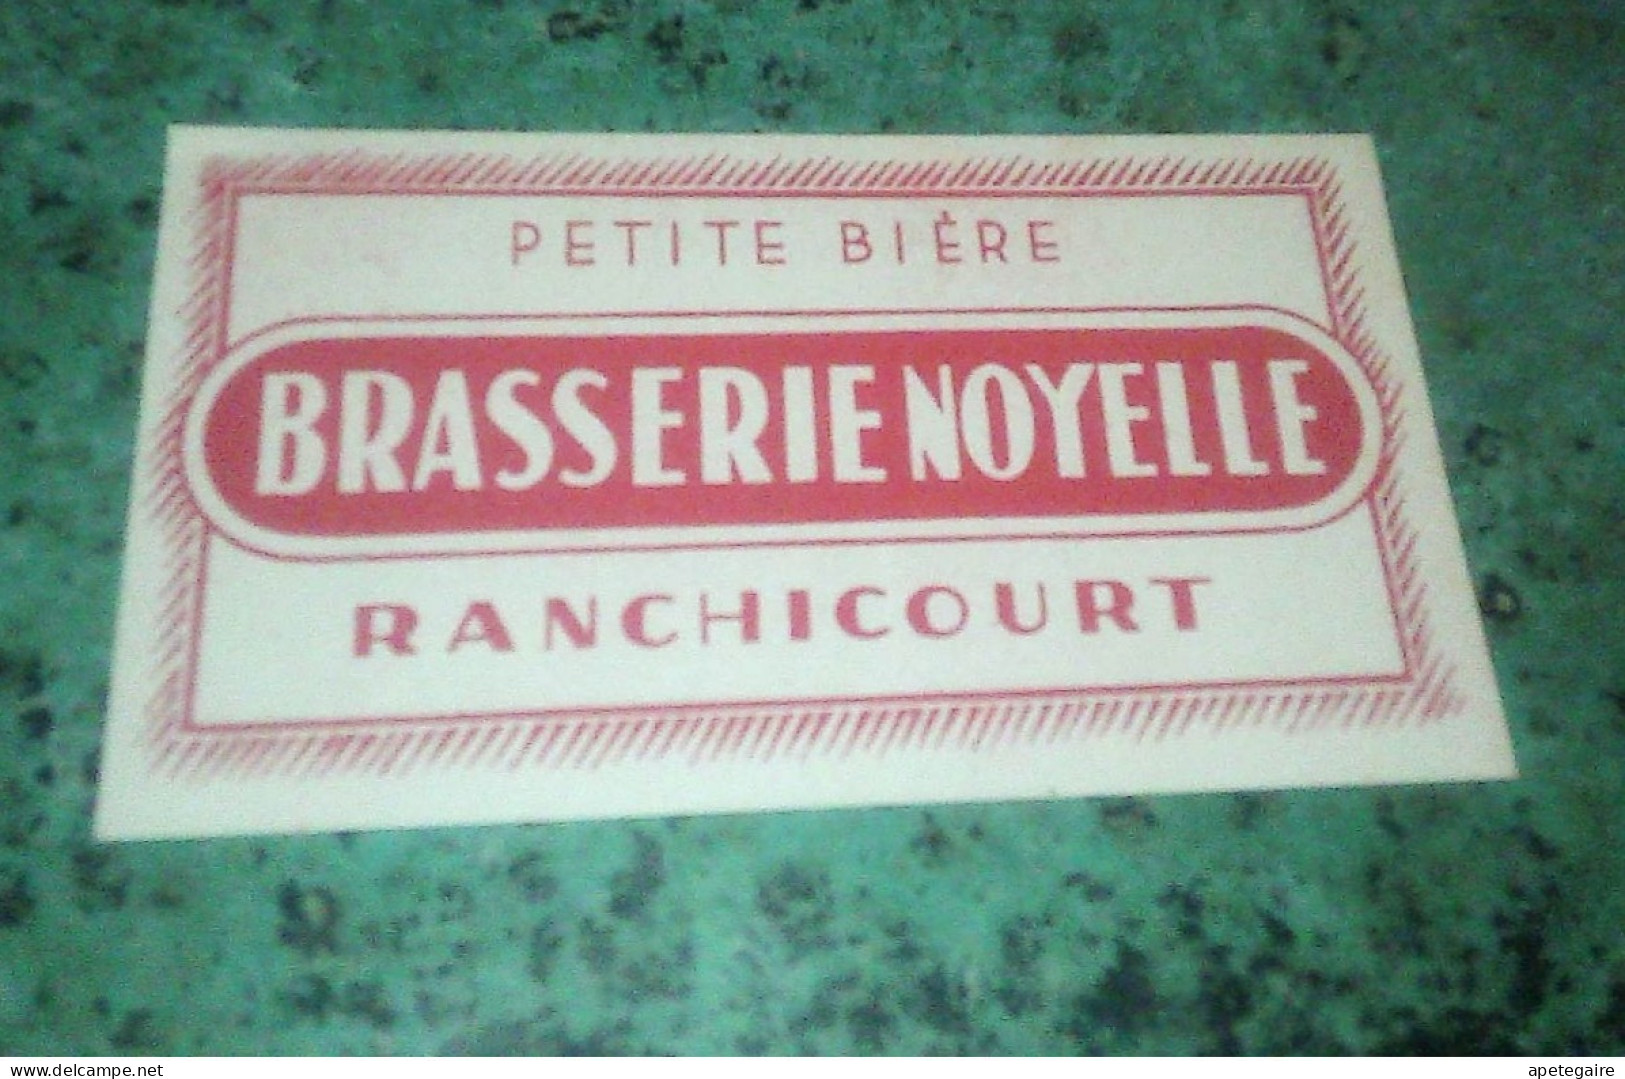 Ranchicourt  Brasserie  Noyelle.  Ancienne étiquette De Bière  Petite Bière - Bière